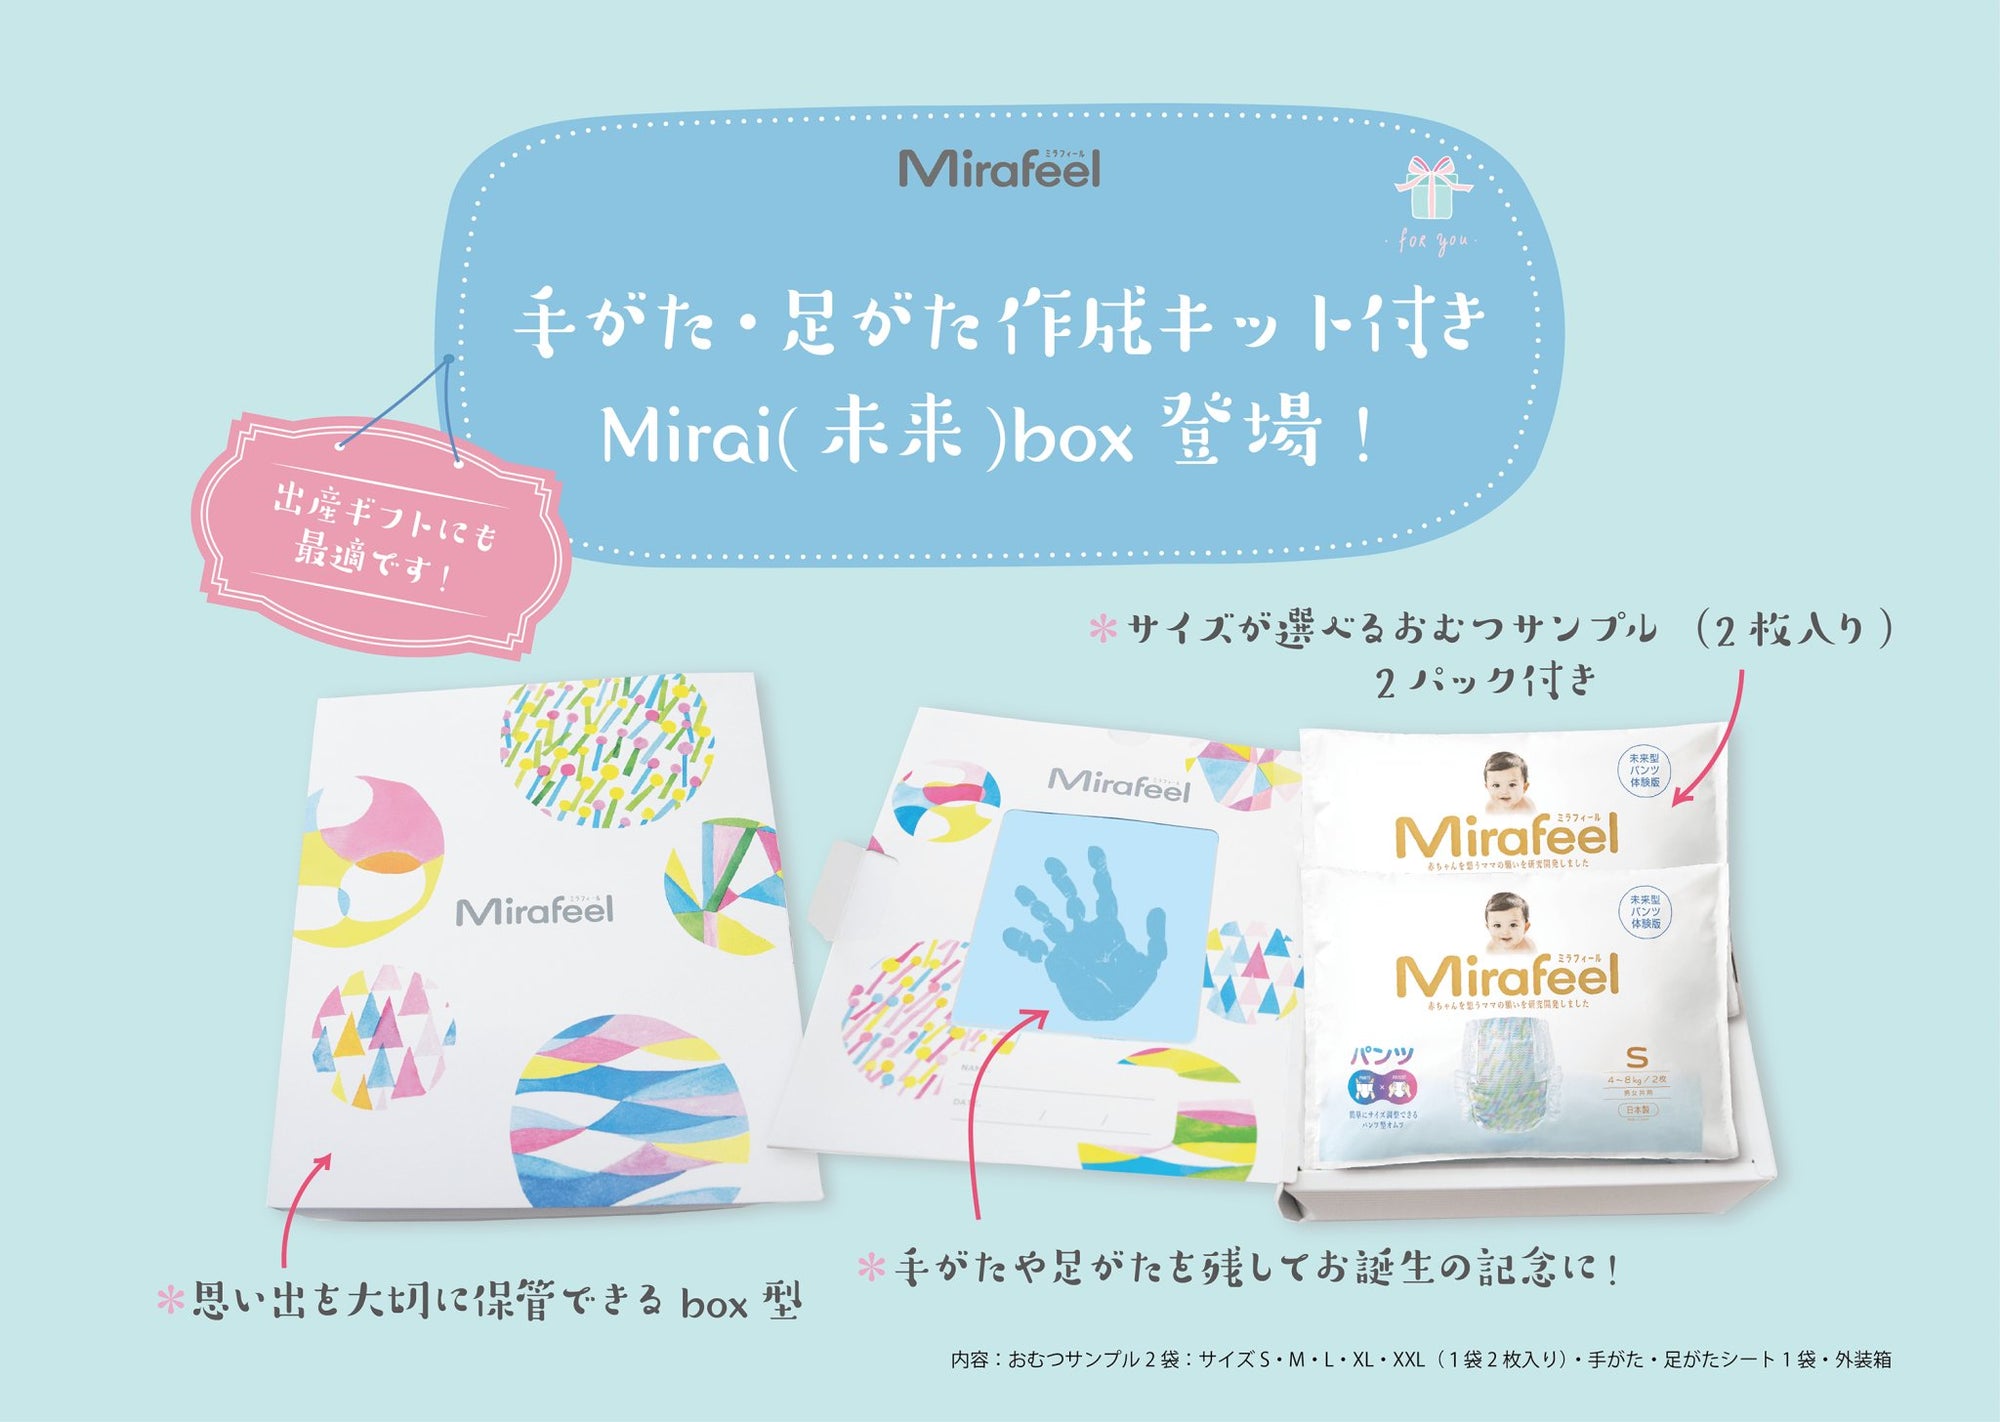 【新発売】MIRAFEEL Mirai(未来)box - Mirafeel